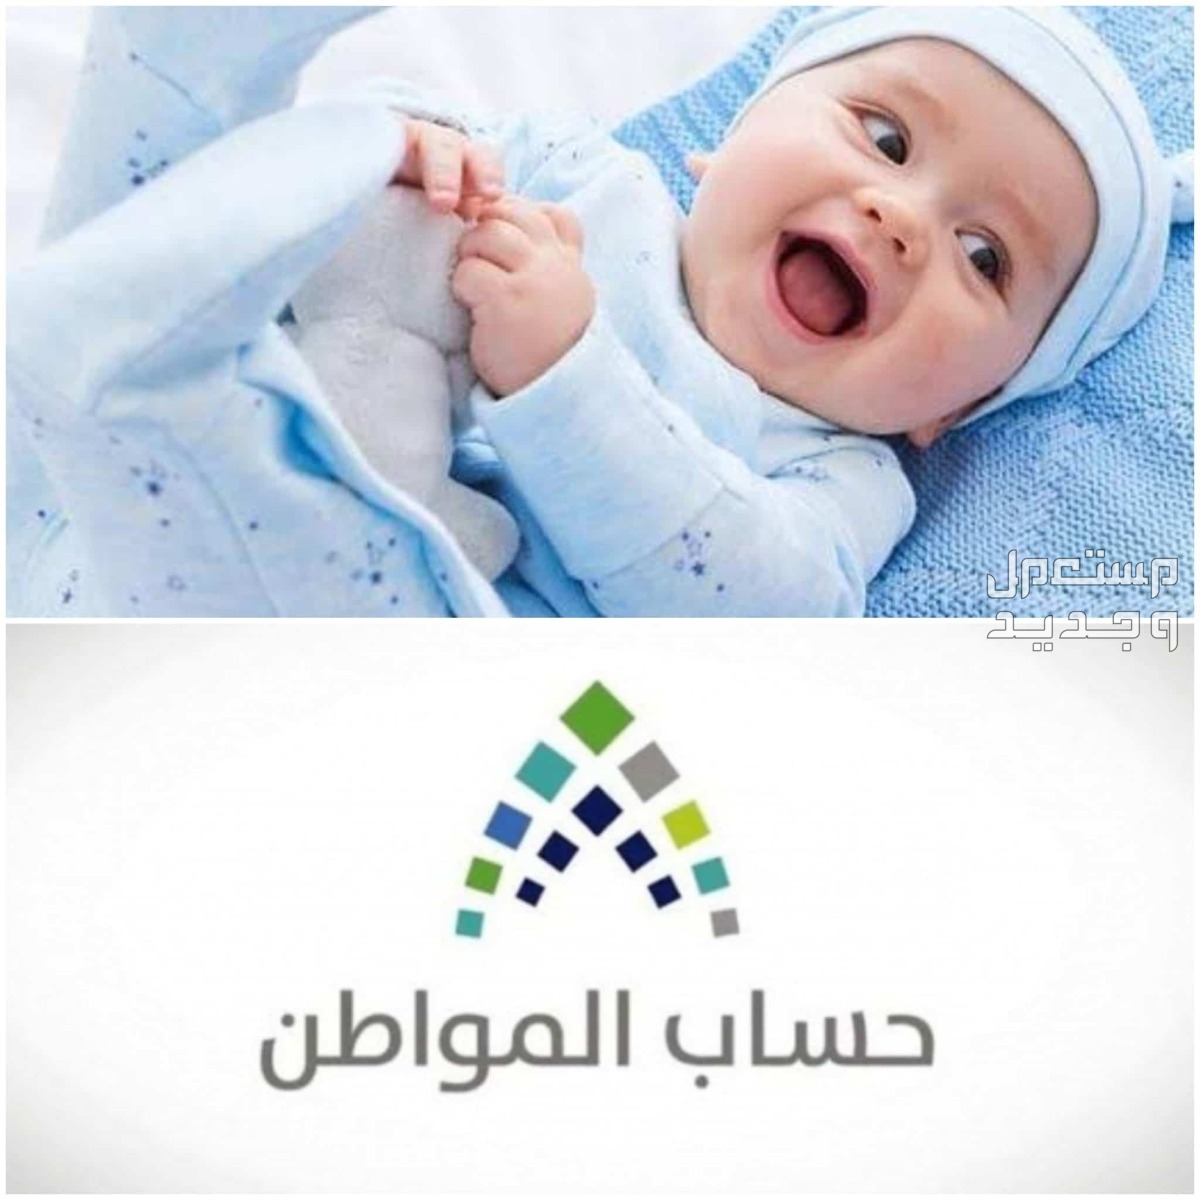 طريقة تسجيل المولود الجديد في حساب المواطن 1445 في الإمارات العربية المتحدة تسجيل المولود الجديد في حساب المواطن